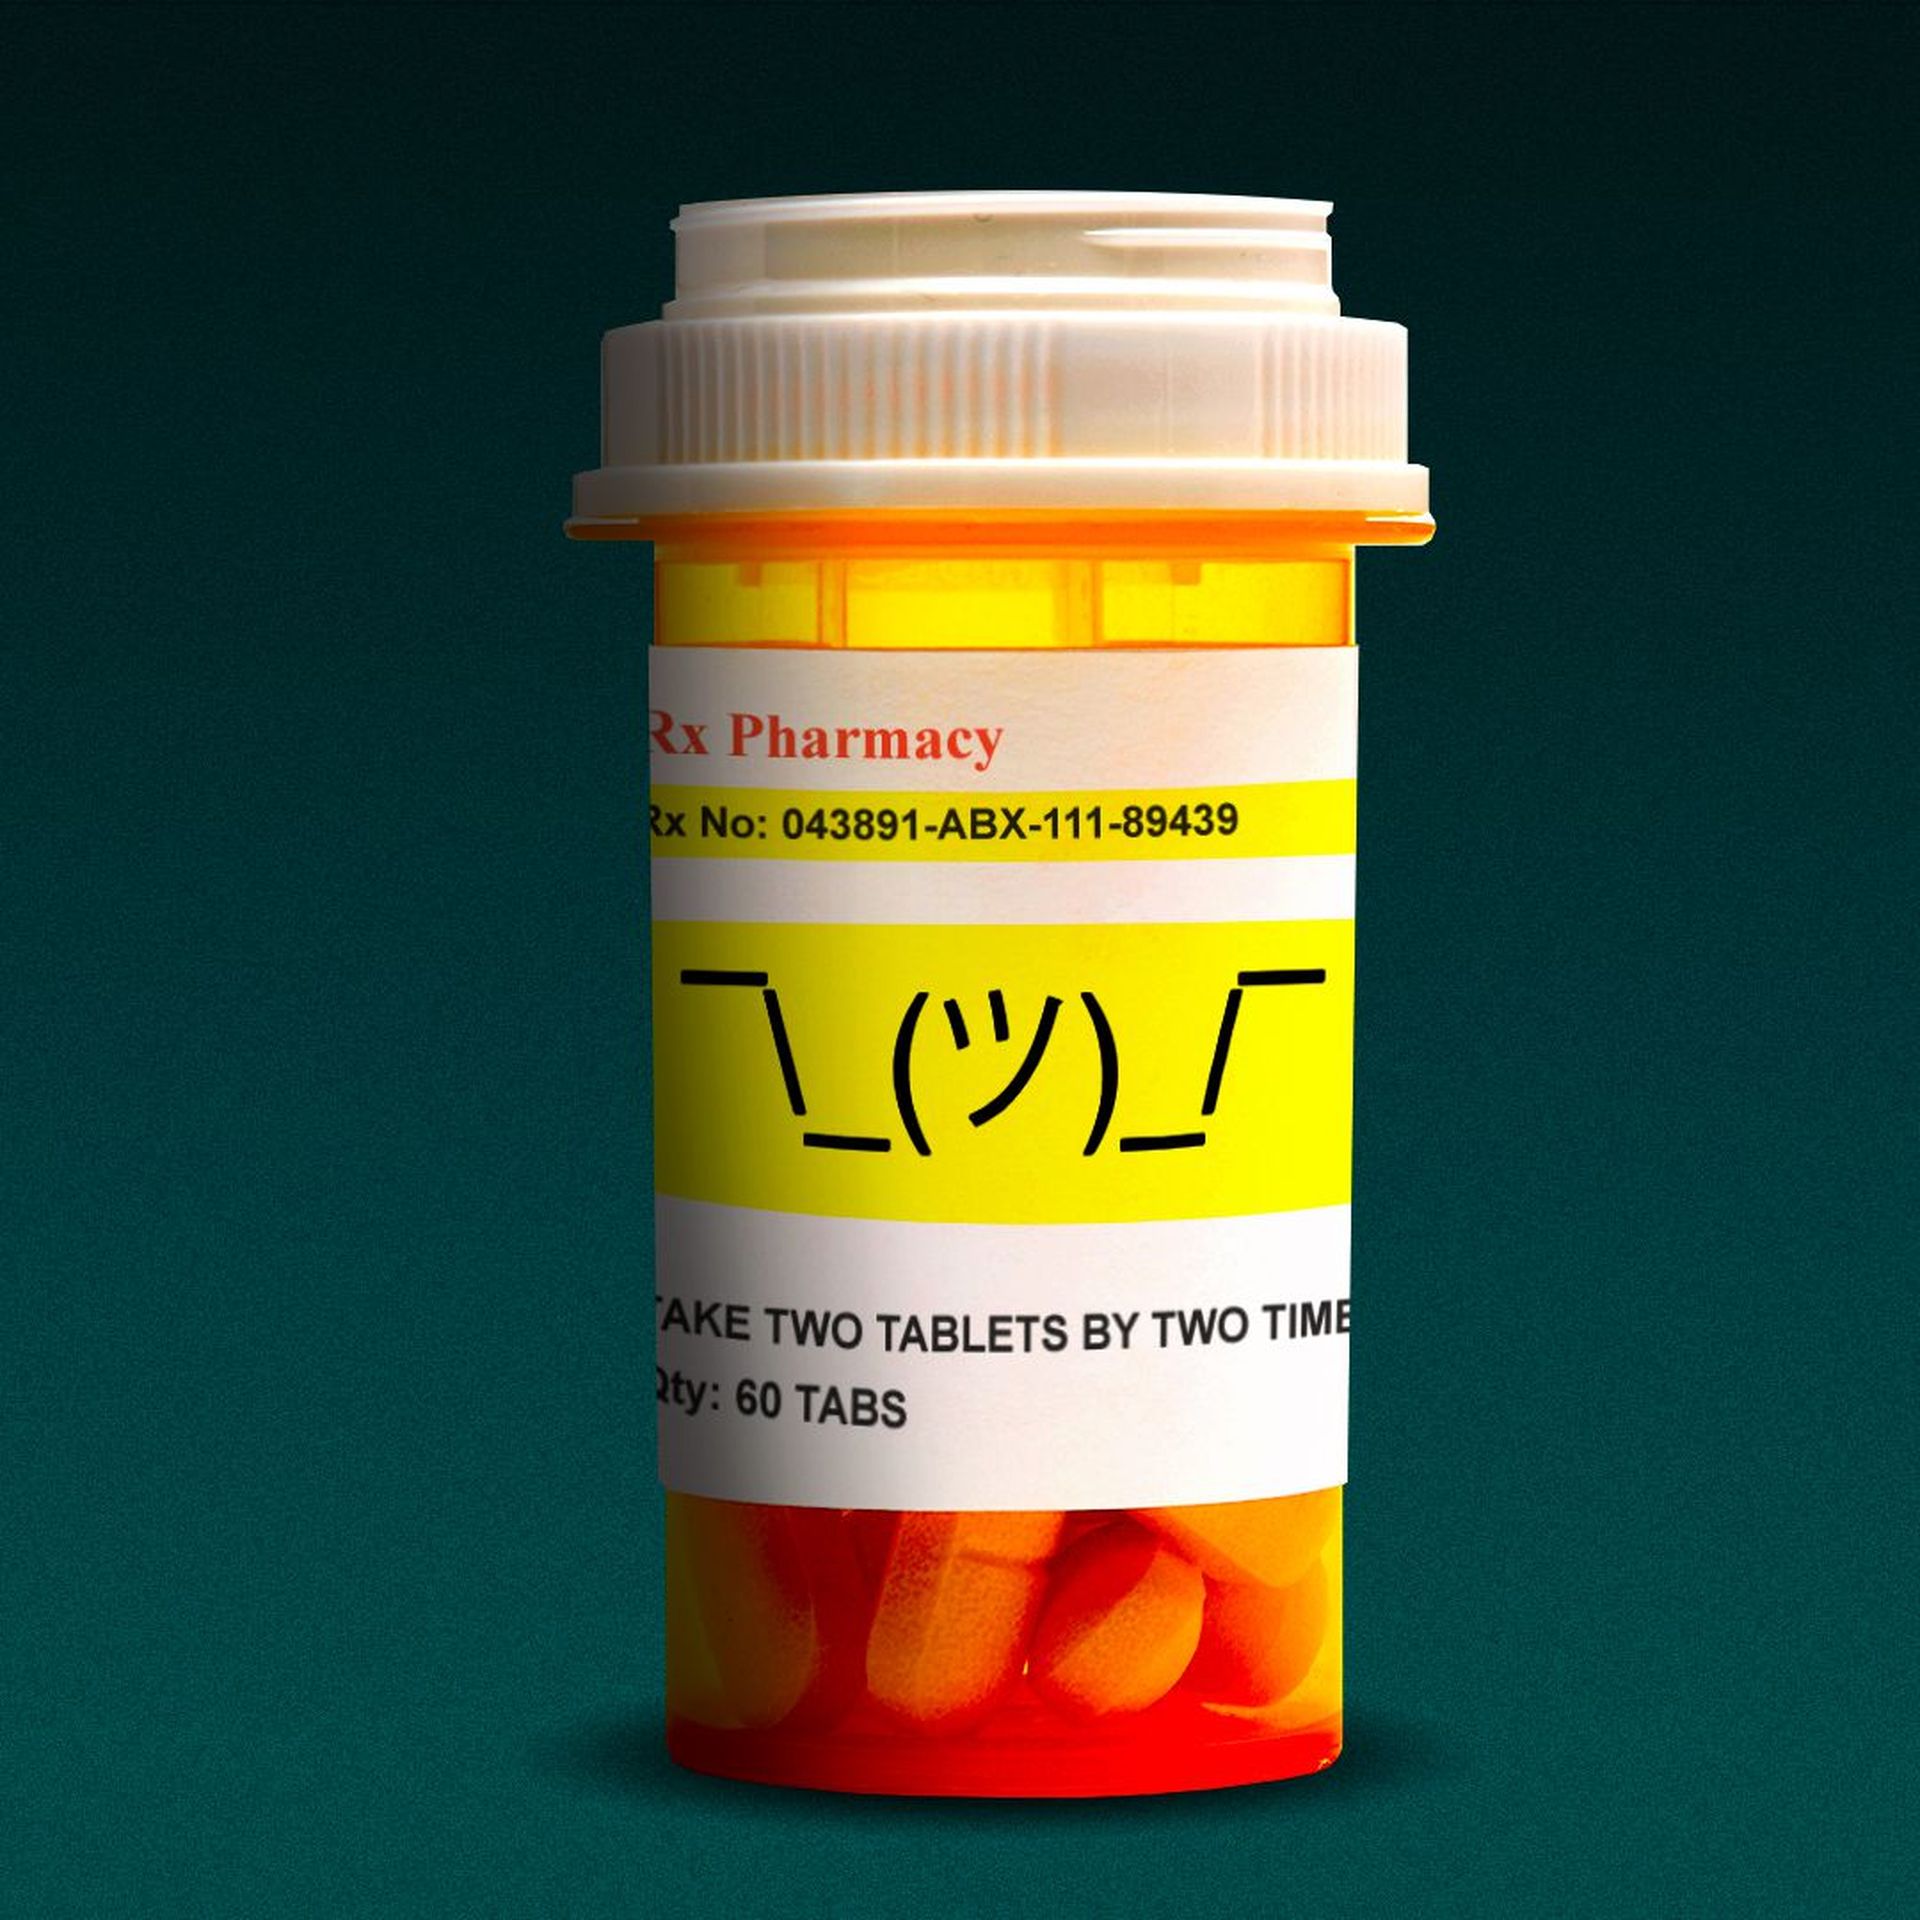 Illustration of a prescription drug bottle with a shrug emoji typed on the label